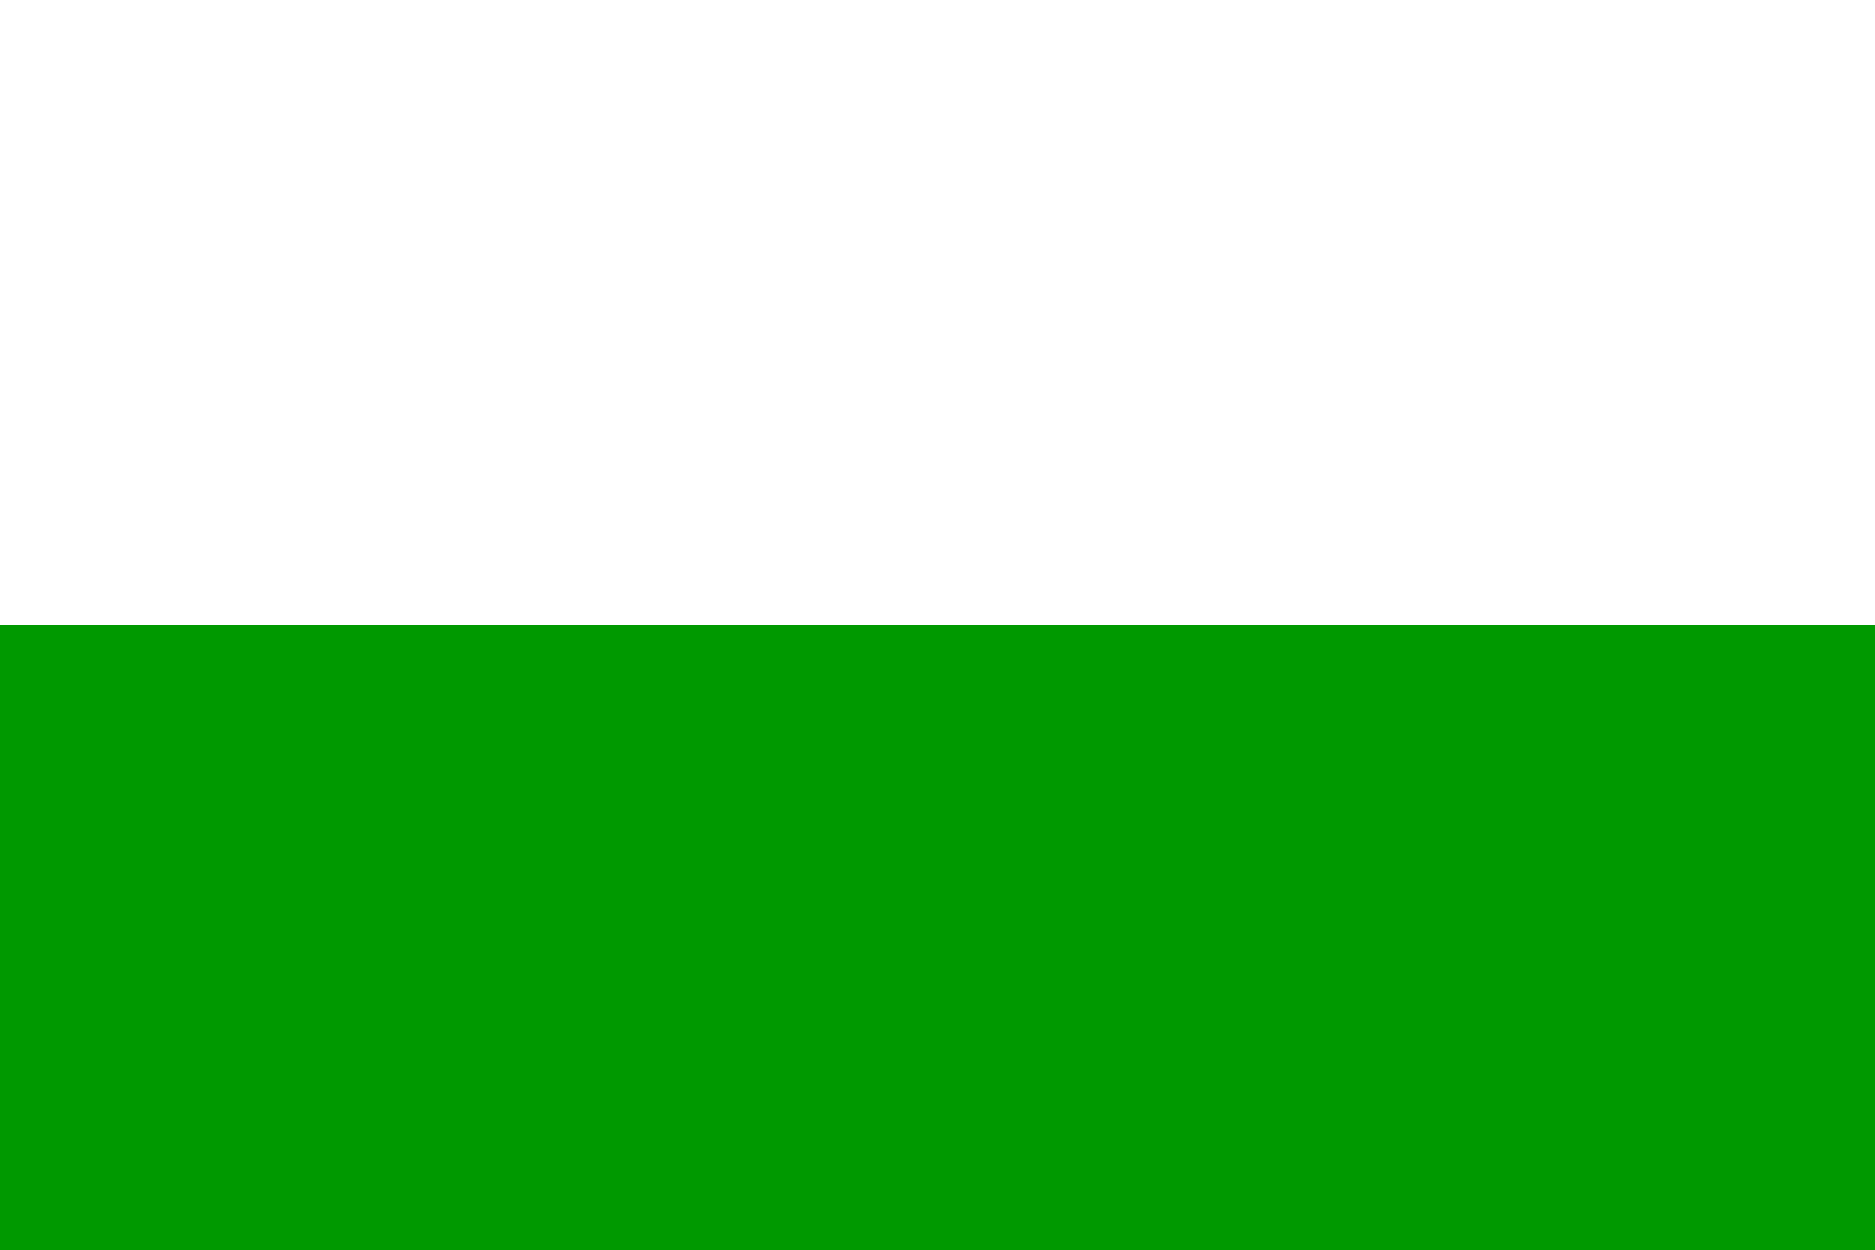 Flagge Ko¨nigreich Sachsen 1815-1918